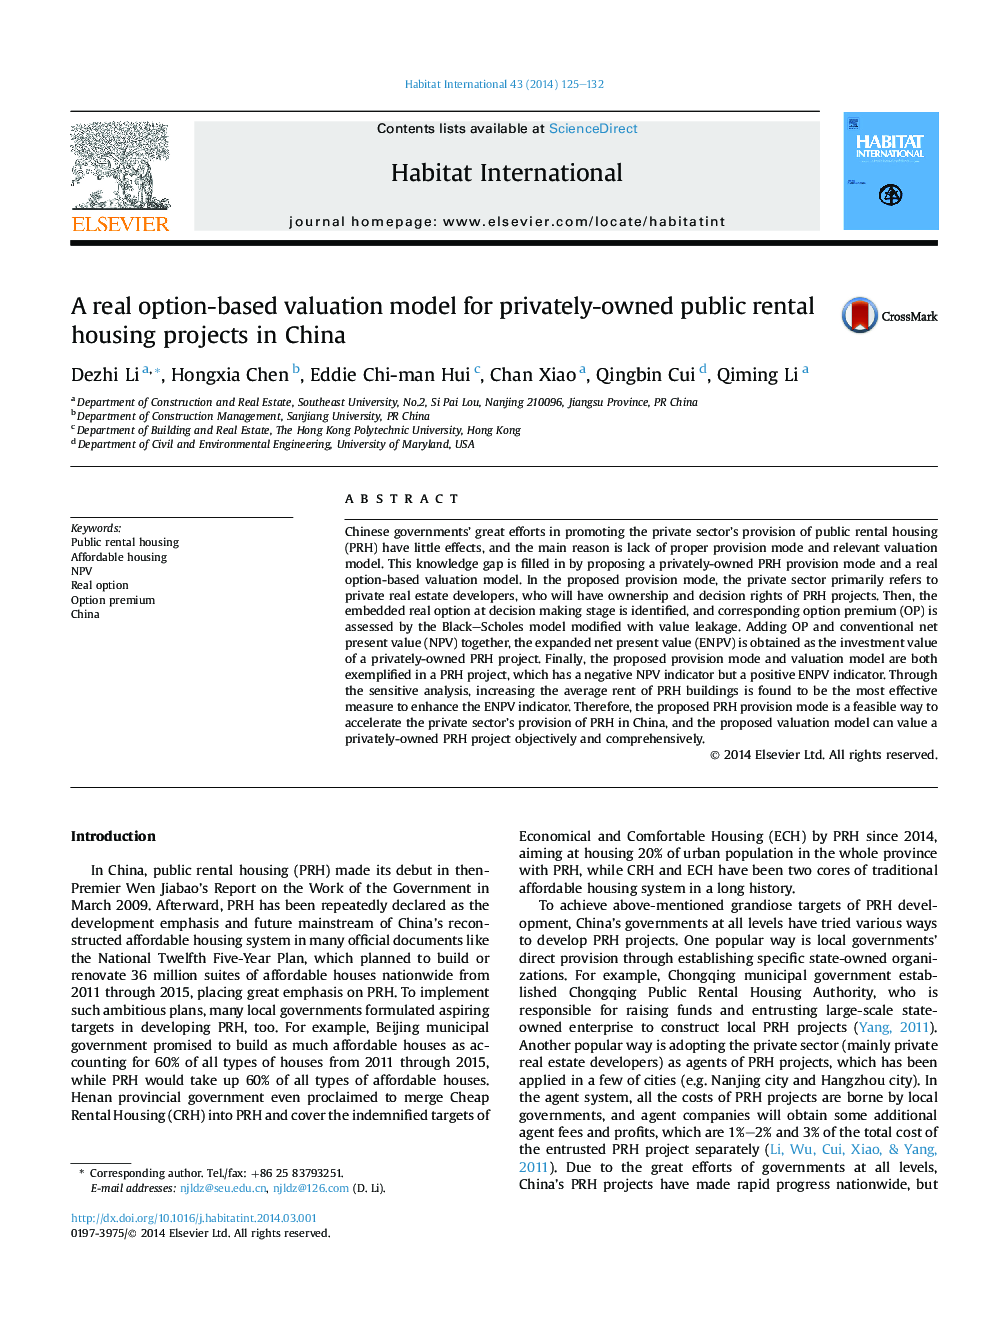 مدل ارزیابی مبتنی بر گزینه واقعی برای پروژه های خصوصی اجاره مسکن خصوصی در چین 